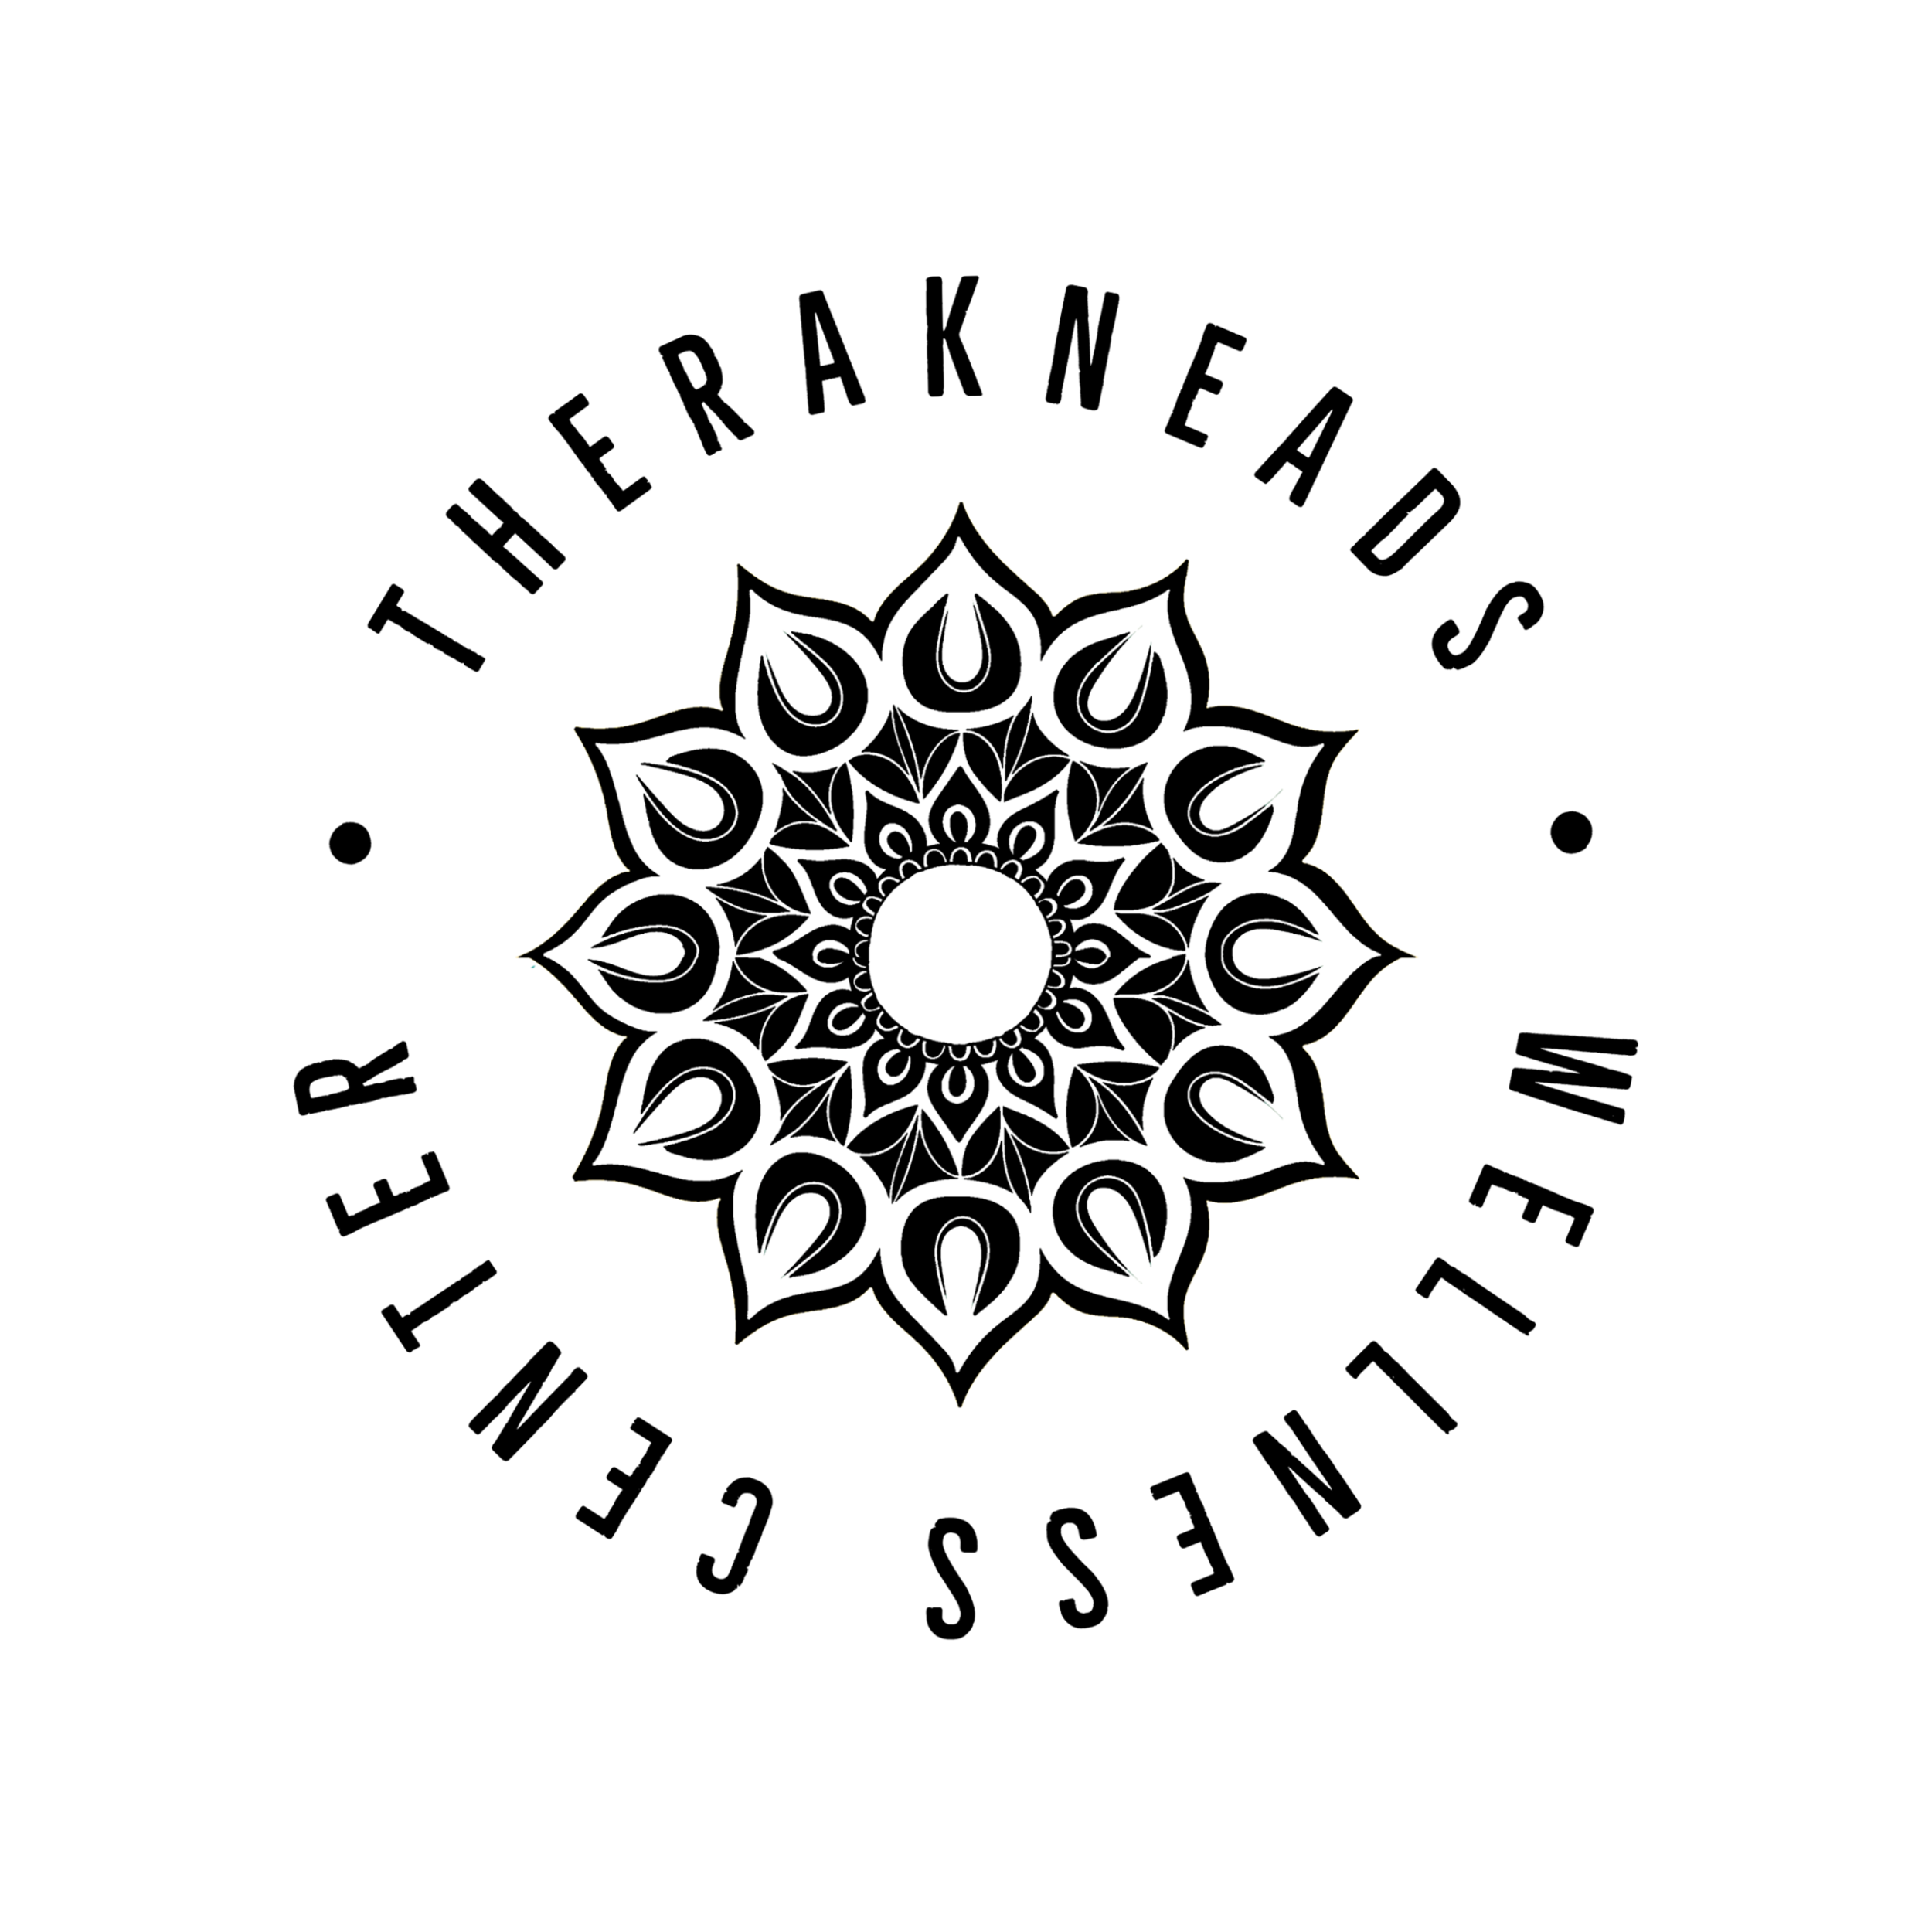 Therakneads